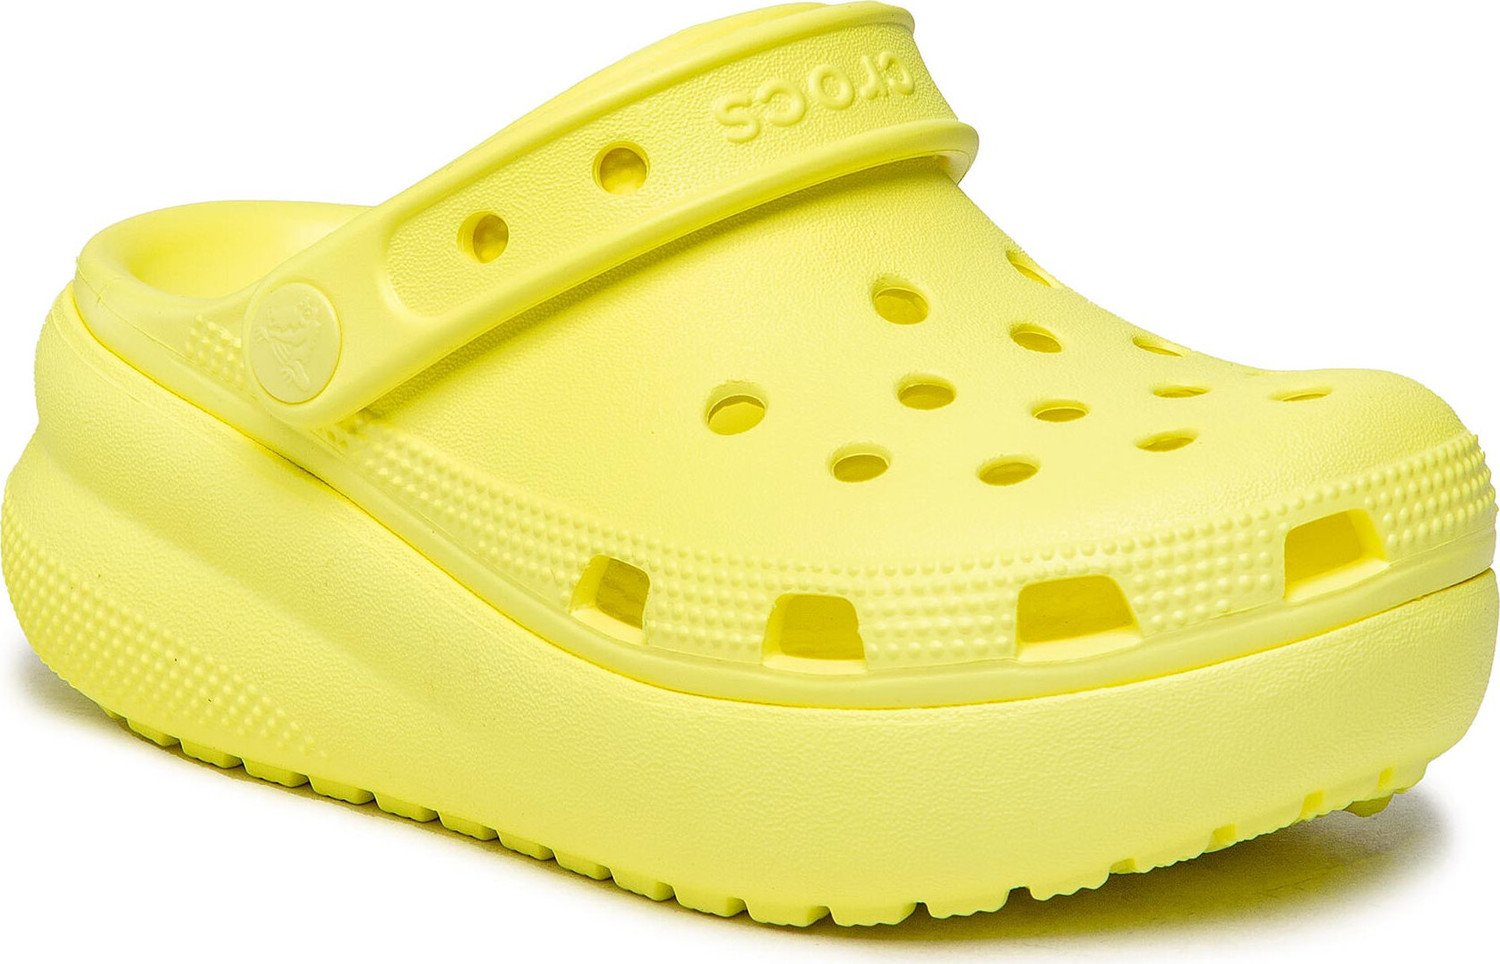 Nazouváky Crocs Classic Crocs Cutie Clog K 207708 Salphur